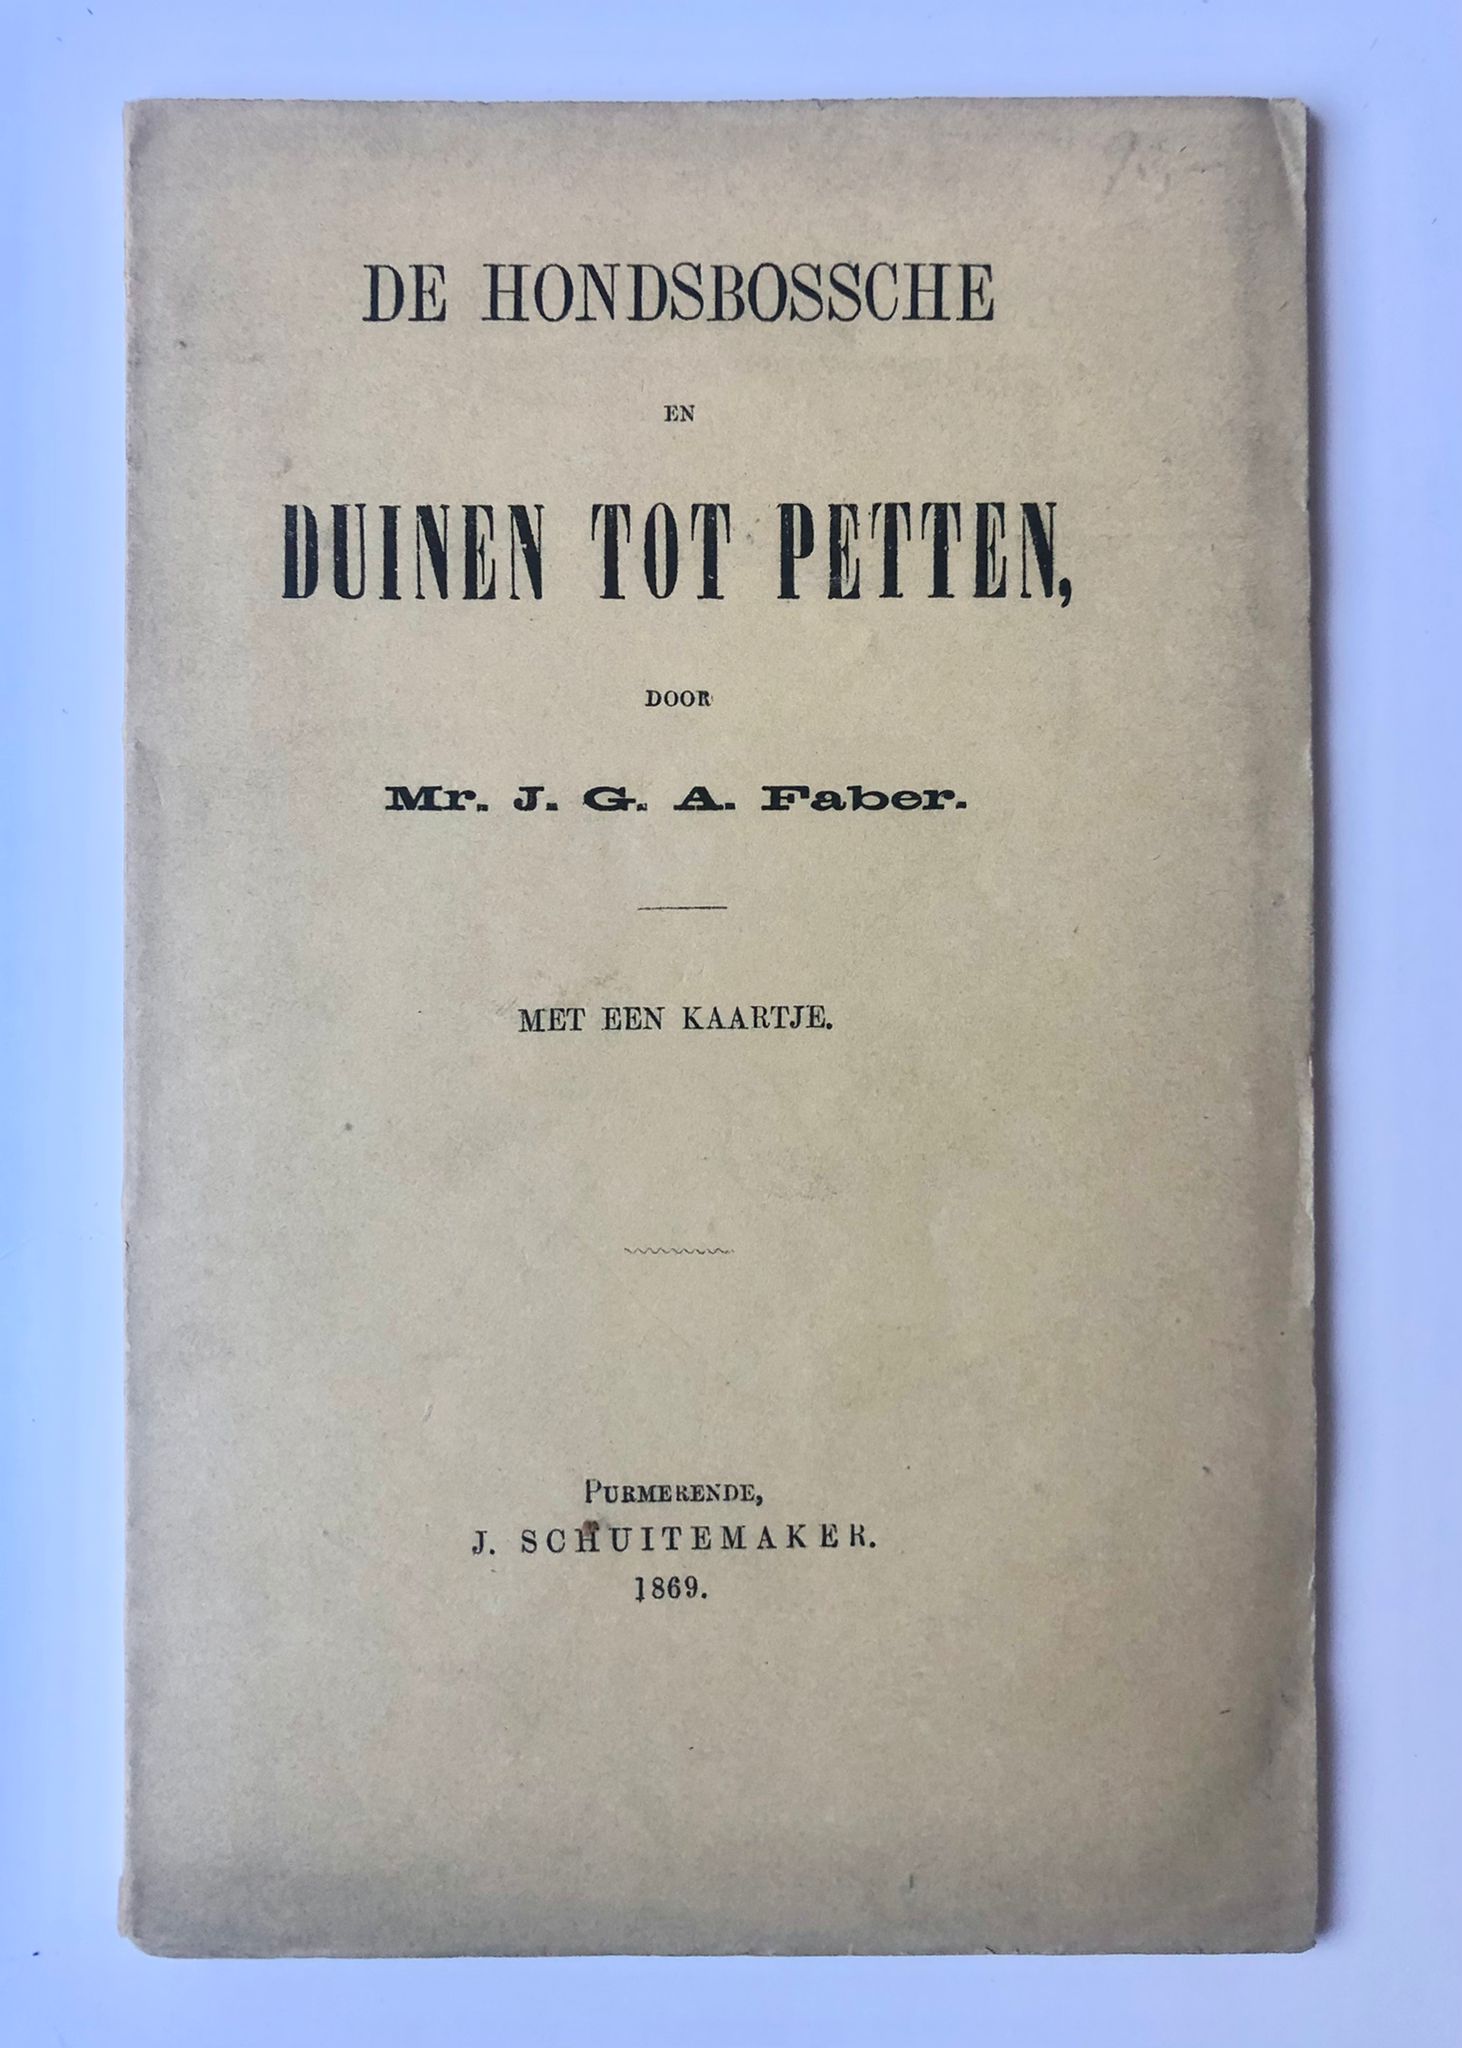 [Petten, Noord-Holland] De Hondsbossche en Duinen tot Petten, door Mr. J. G. A. Faber. Met een kaartje. J. Schuitemaker, Purmerend, 1869, 40 pp.